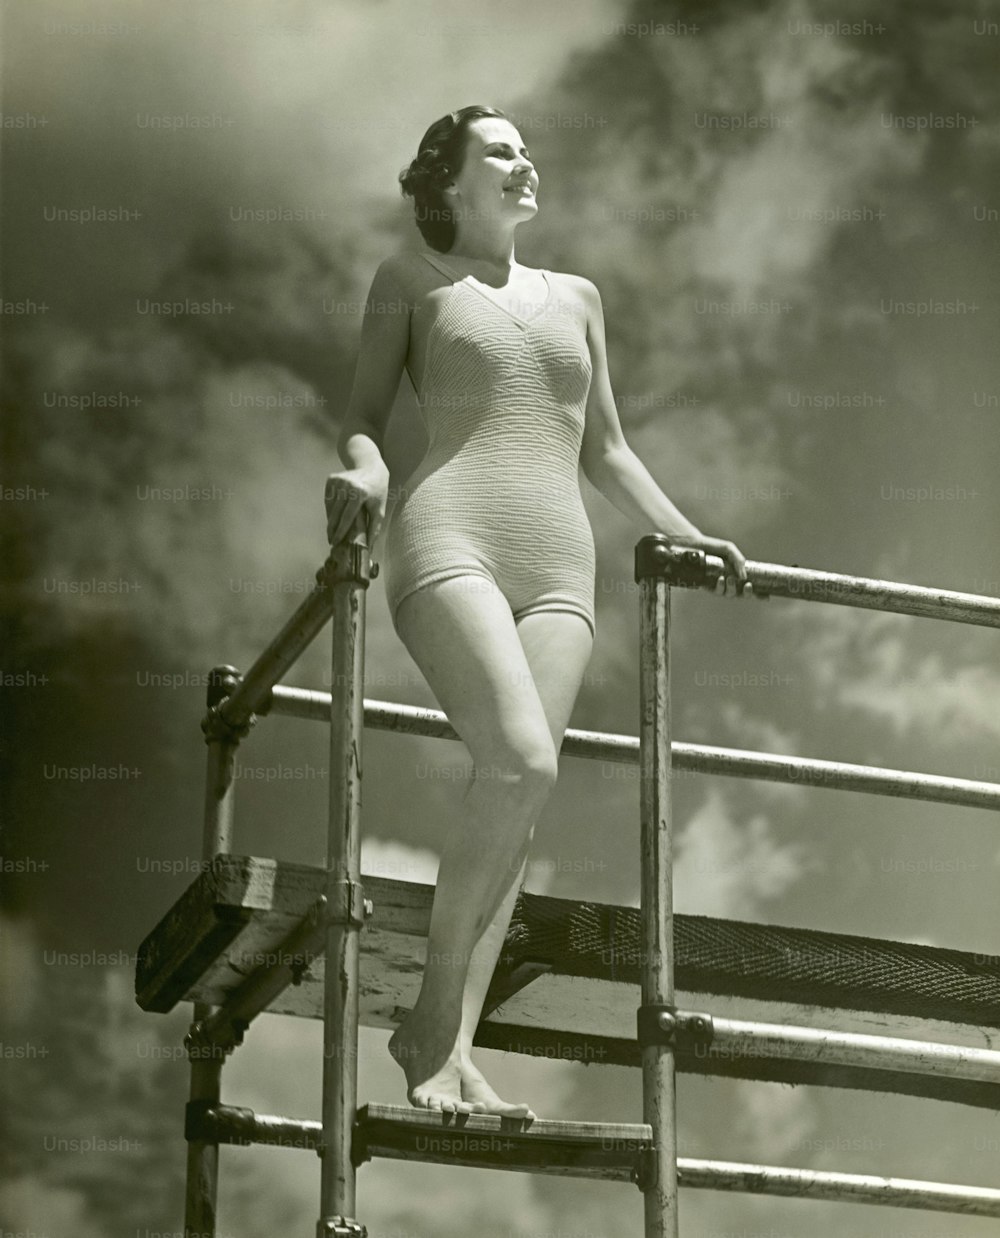 ÉTATS-UNIS - Circa 1950s : Femme en maillot de bain sur une échelle de plongeoir.